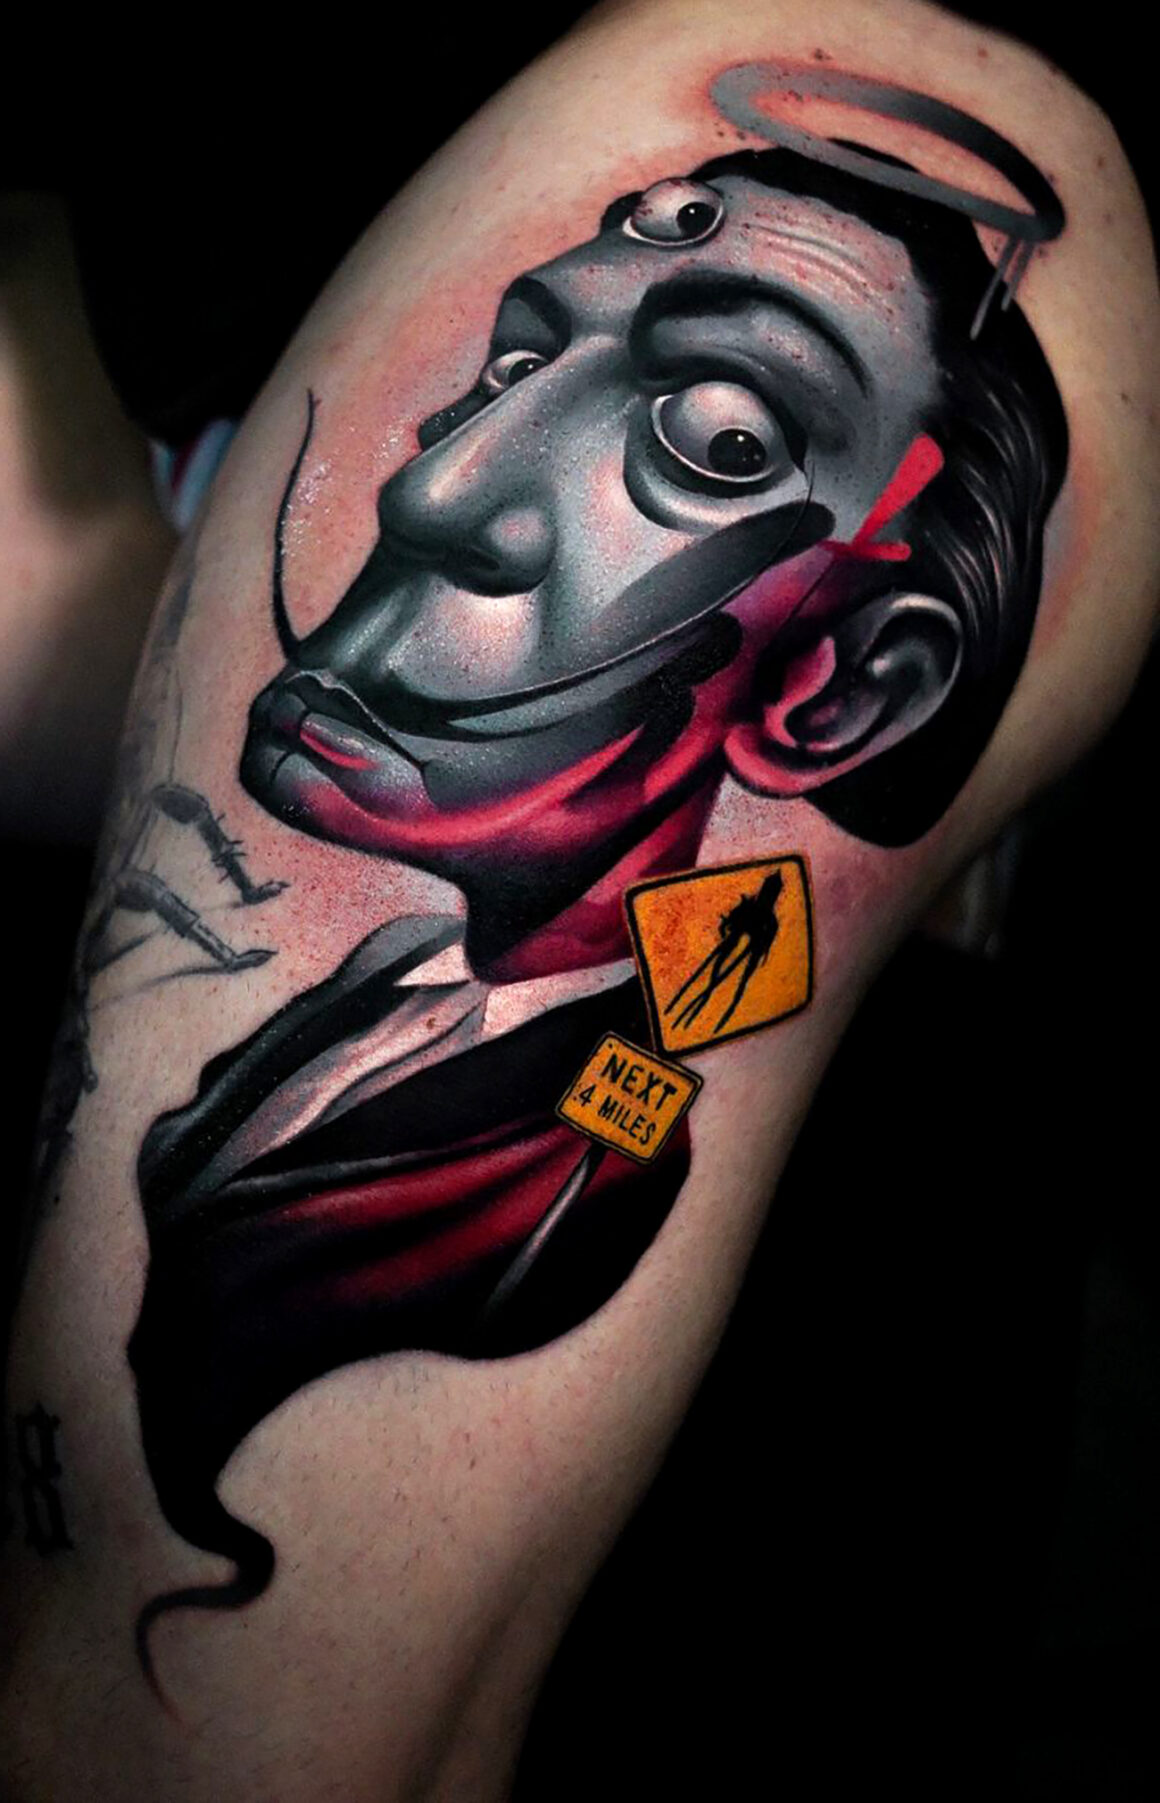 Tattoo by Vladolla, German Skull Tattoo, @skulltattoosbadvilbel